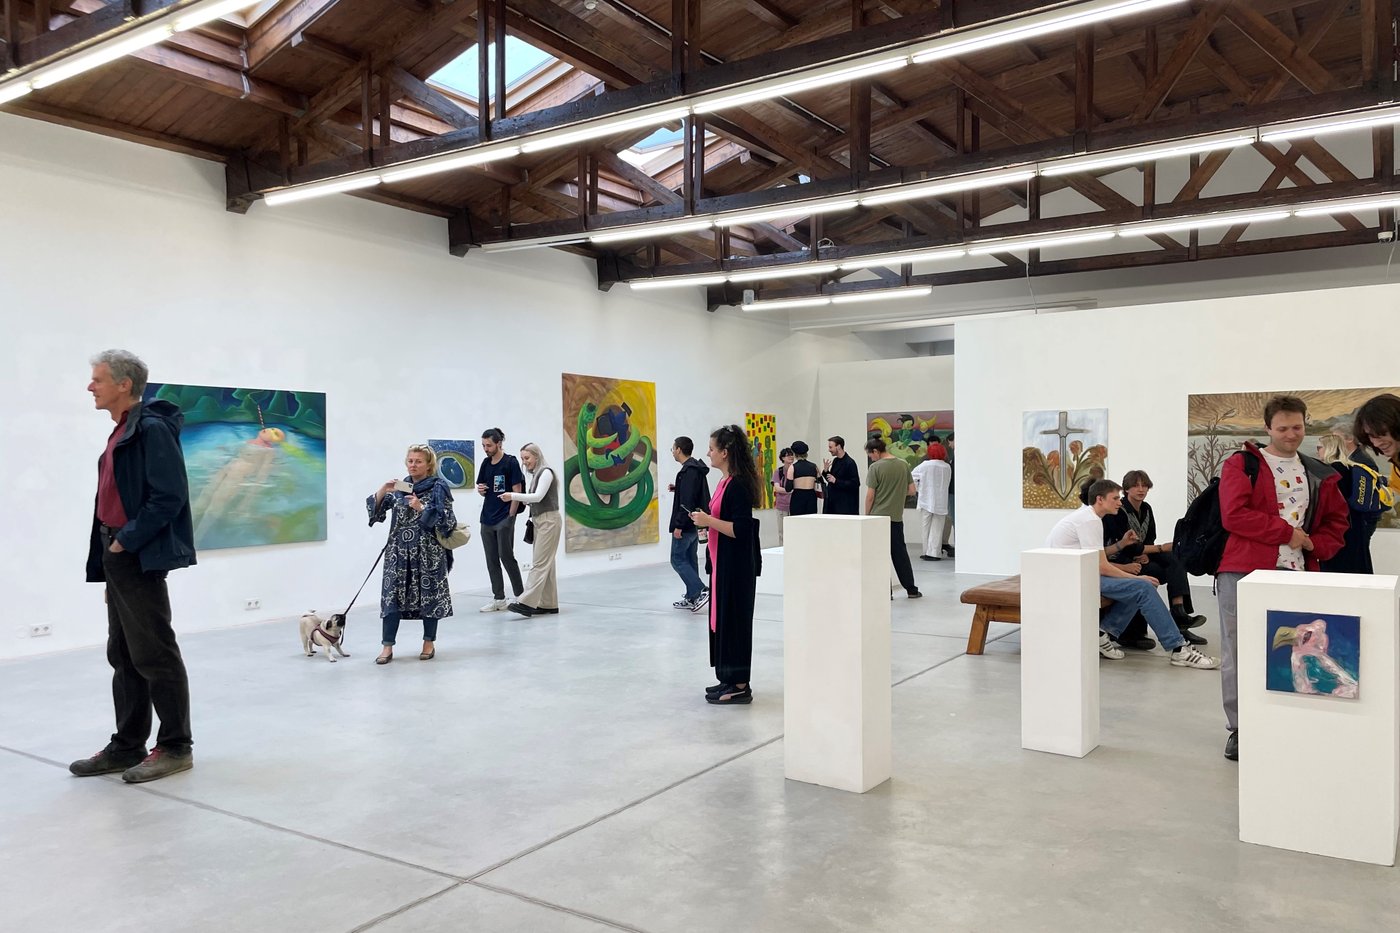 Besucher_innen tauschen sich über die Werke in der Galerie aus. An den drei Wänden und drei im Raum stehenden Sockeln sind 8 Gemälde zu sehen.